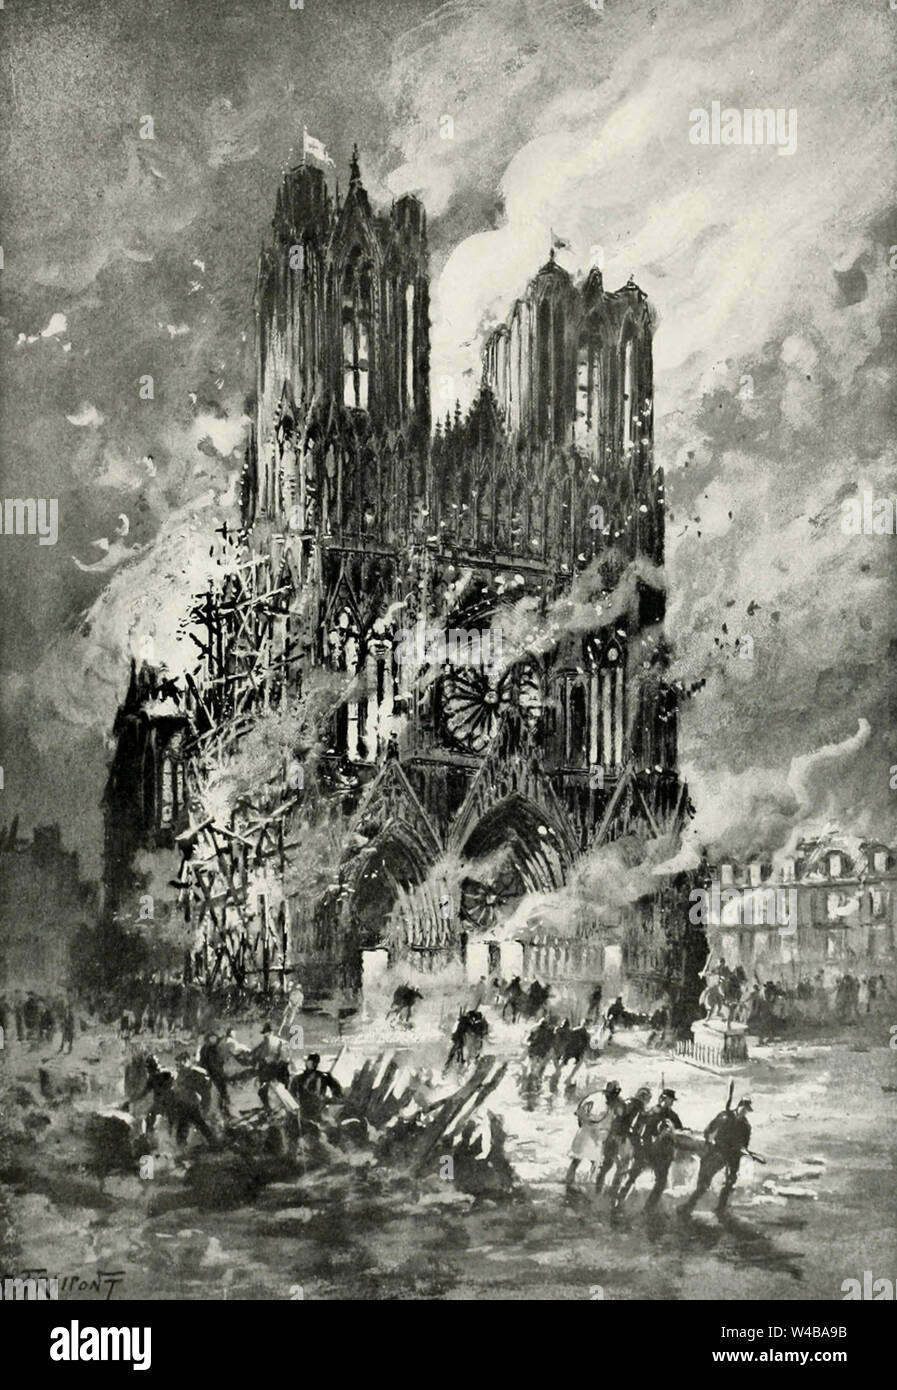 Le crime de 19 septembre - l'incendie de la cathédrale Notre-Dame de Reims - soldats français de procéder à la rescousse des soldats allemands dans la cathédrale - 1914 Banque D'Images